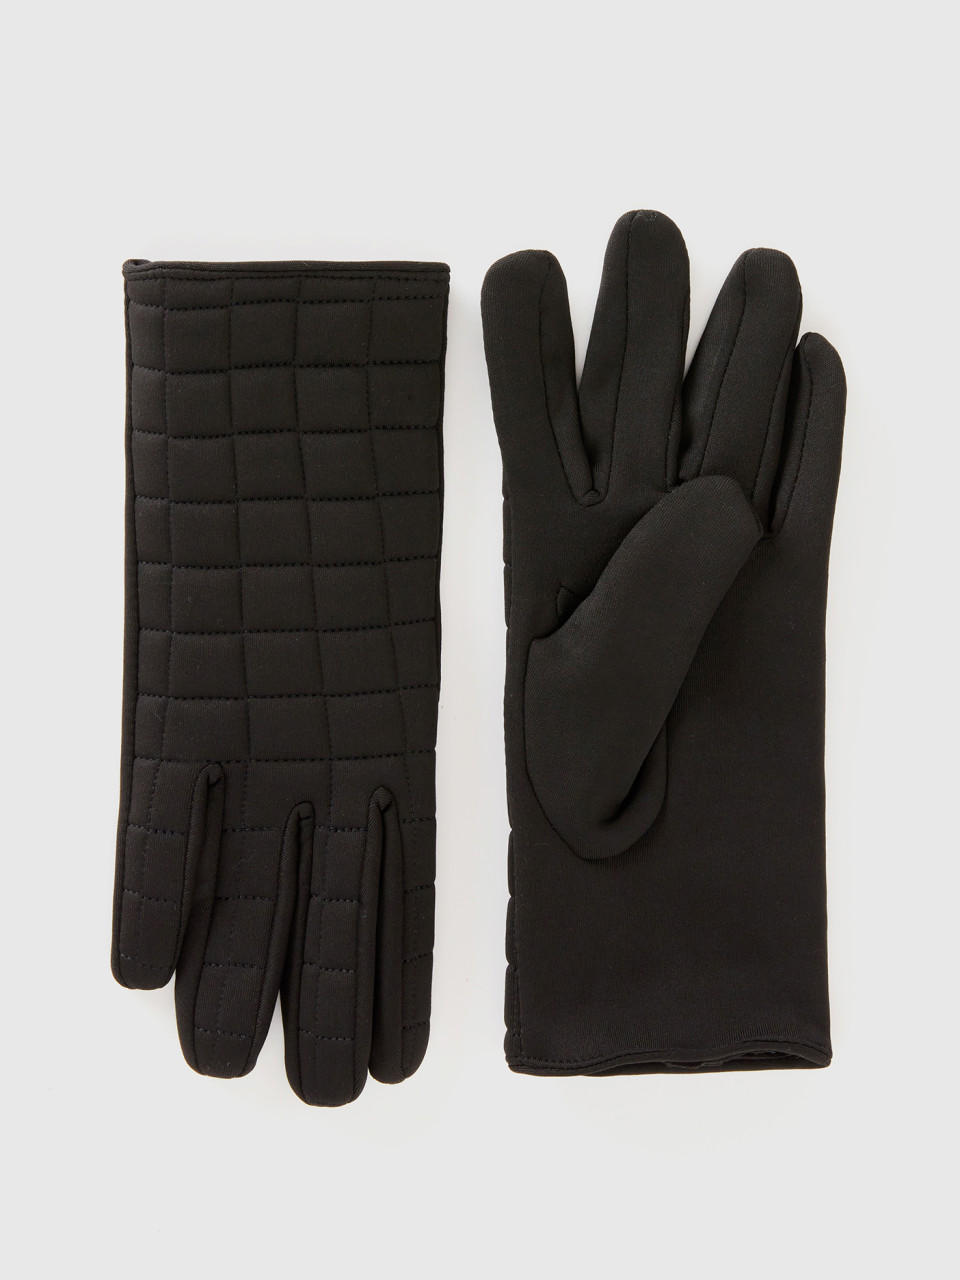 Benetton, Padded Nylon Gloves, Black, Women